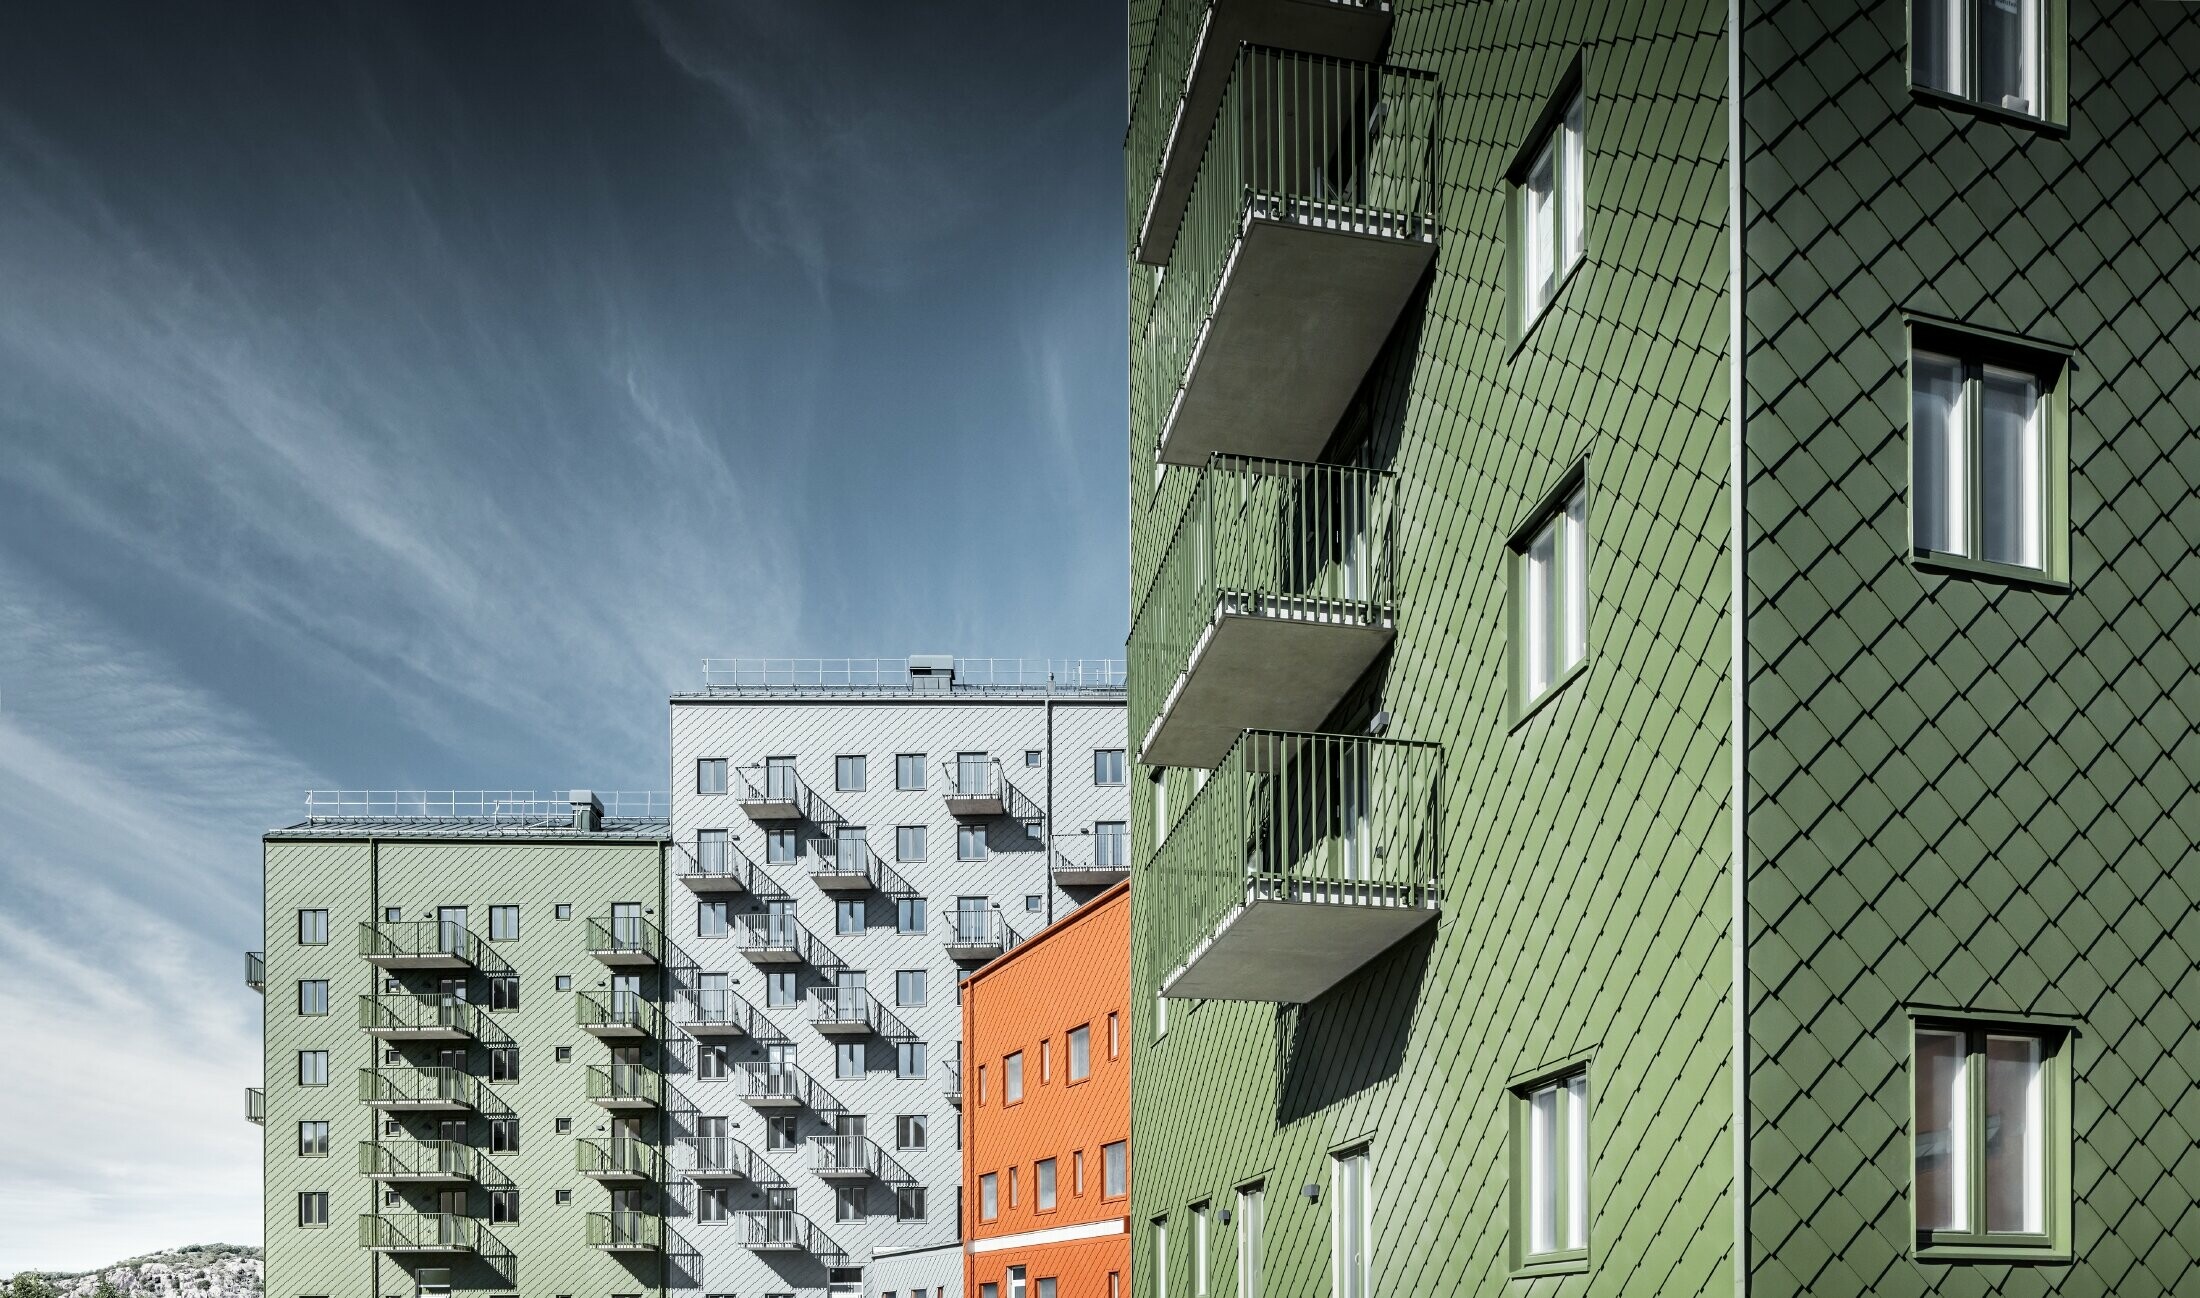 Više stambenih zgrada jedna pokraj druge, obloženih PREFA zidnim rombom 29 × 29 u bojama ciglasto crvena, maslinasto zelena i svijetlo siva.